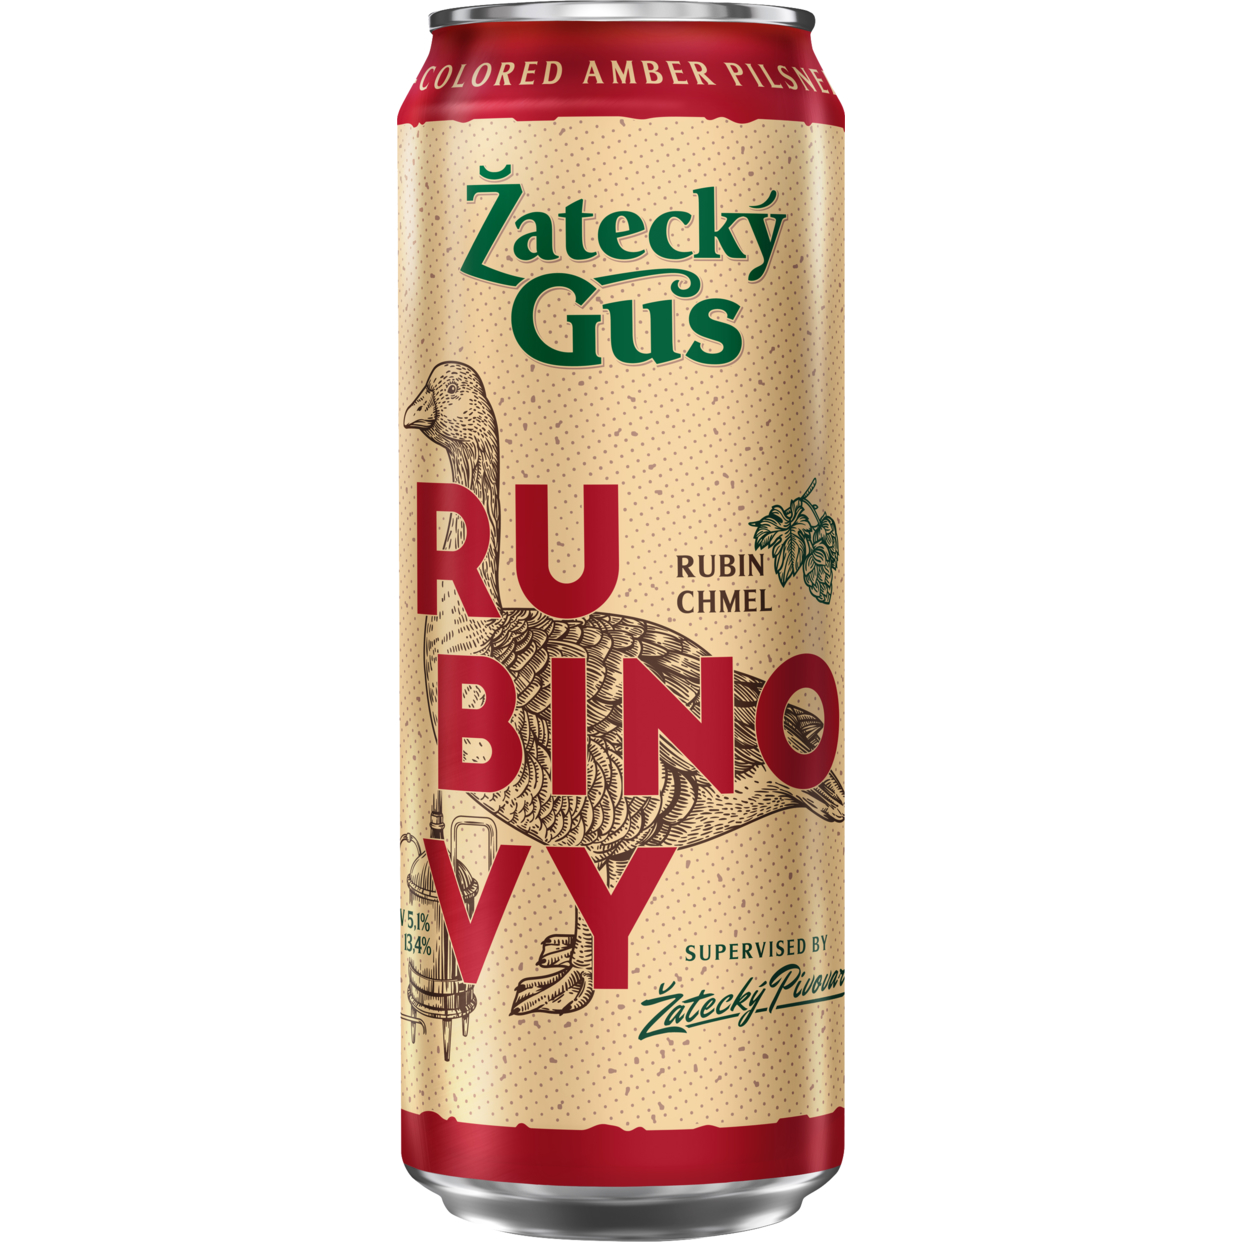 Пивной напиток Zatecky Gus Rubin, 5,1%, 0,45 л по акции в Пятерочке